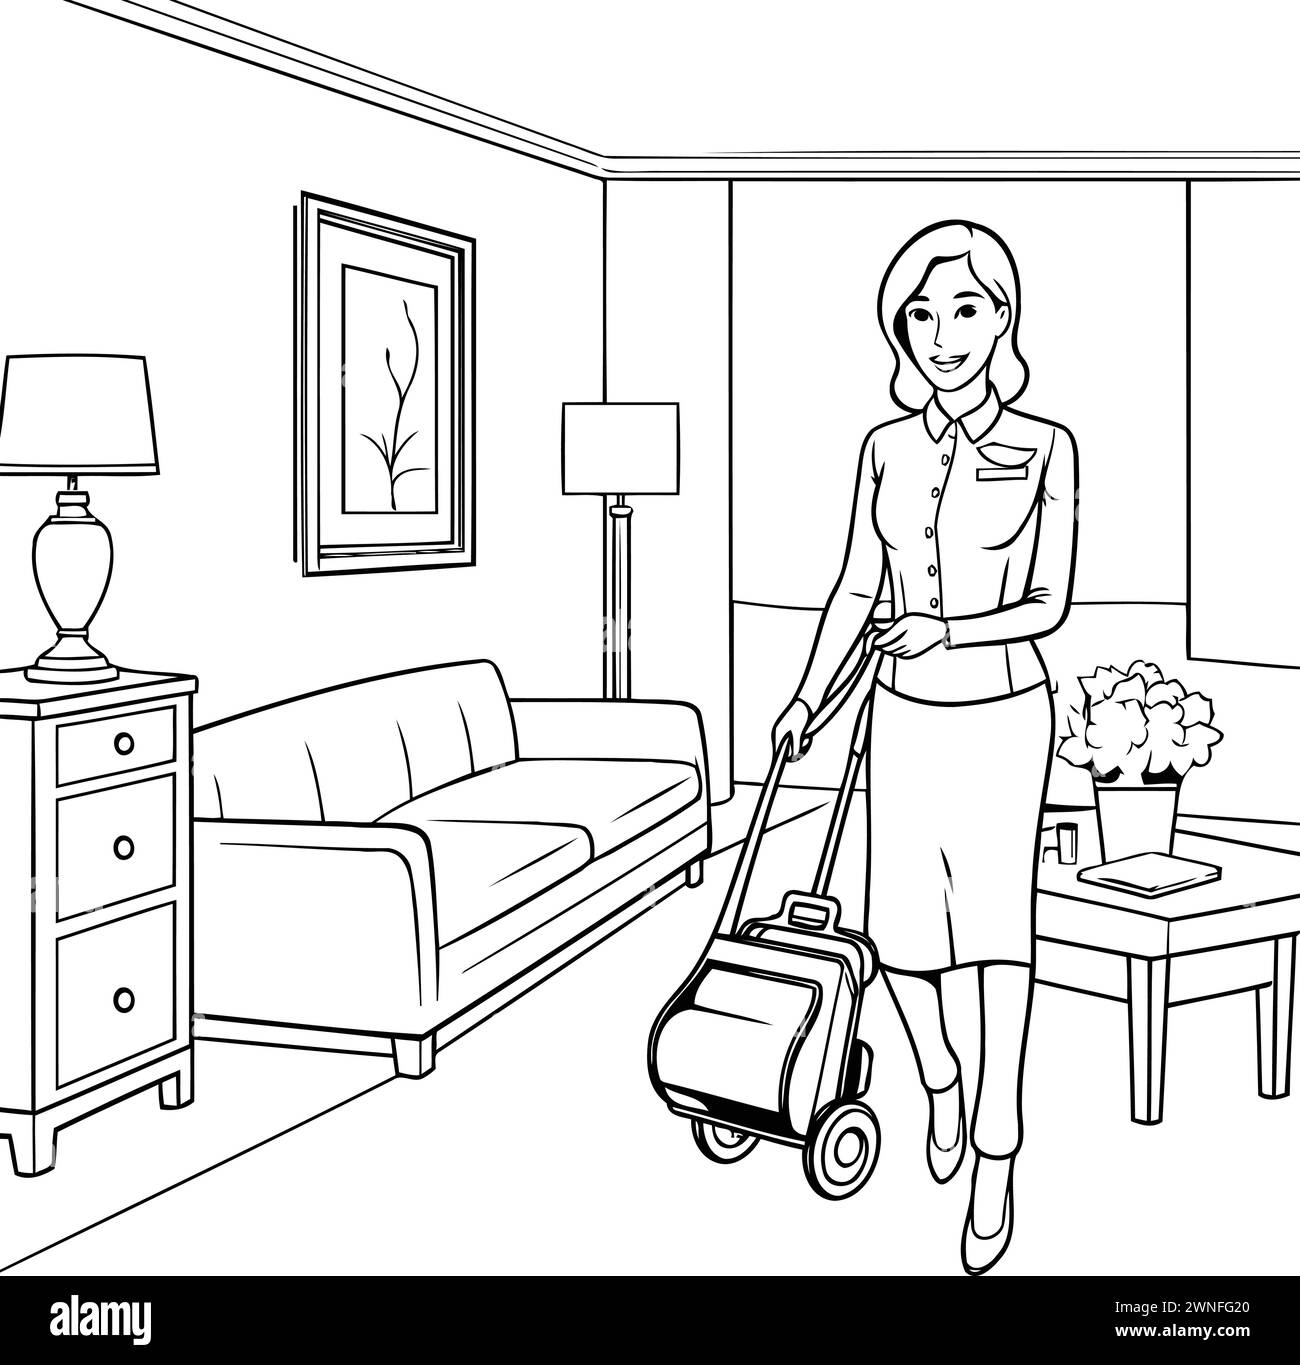 Femme au foyer avec dessin animé d'aspirateur en noir et blanc illustration vectorielle design graphique Illustration de Vecteur